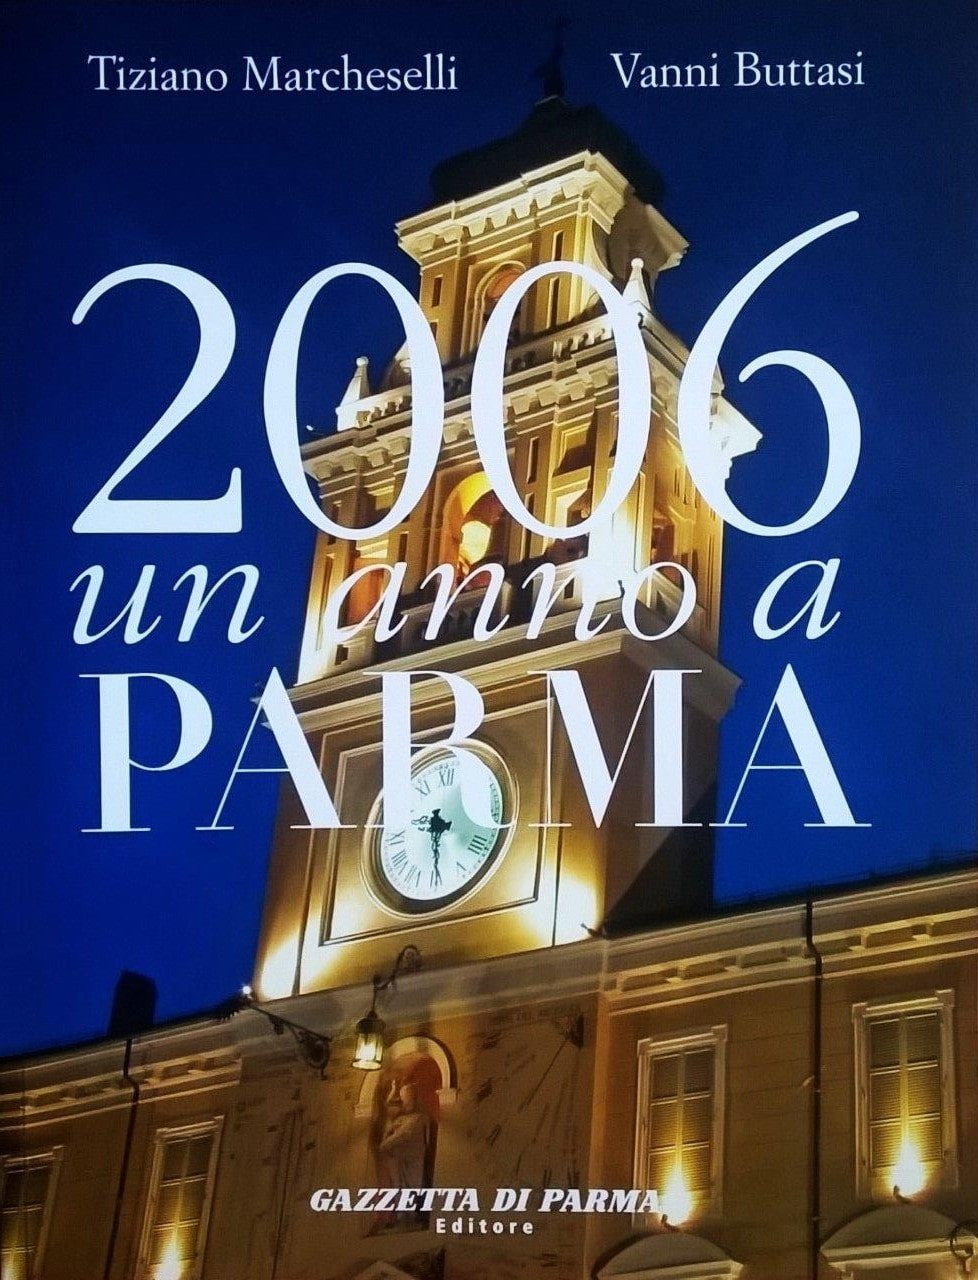 Tiziano Marcheselli - Vanni Buttasi, 2006 un anno a Parma, Parma, Gazzetta di Parma Editore (Grafiche Step), 2007, prefazione di Giuliano Molossi